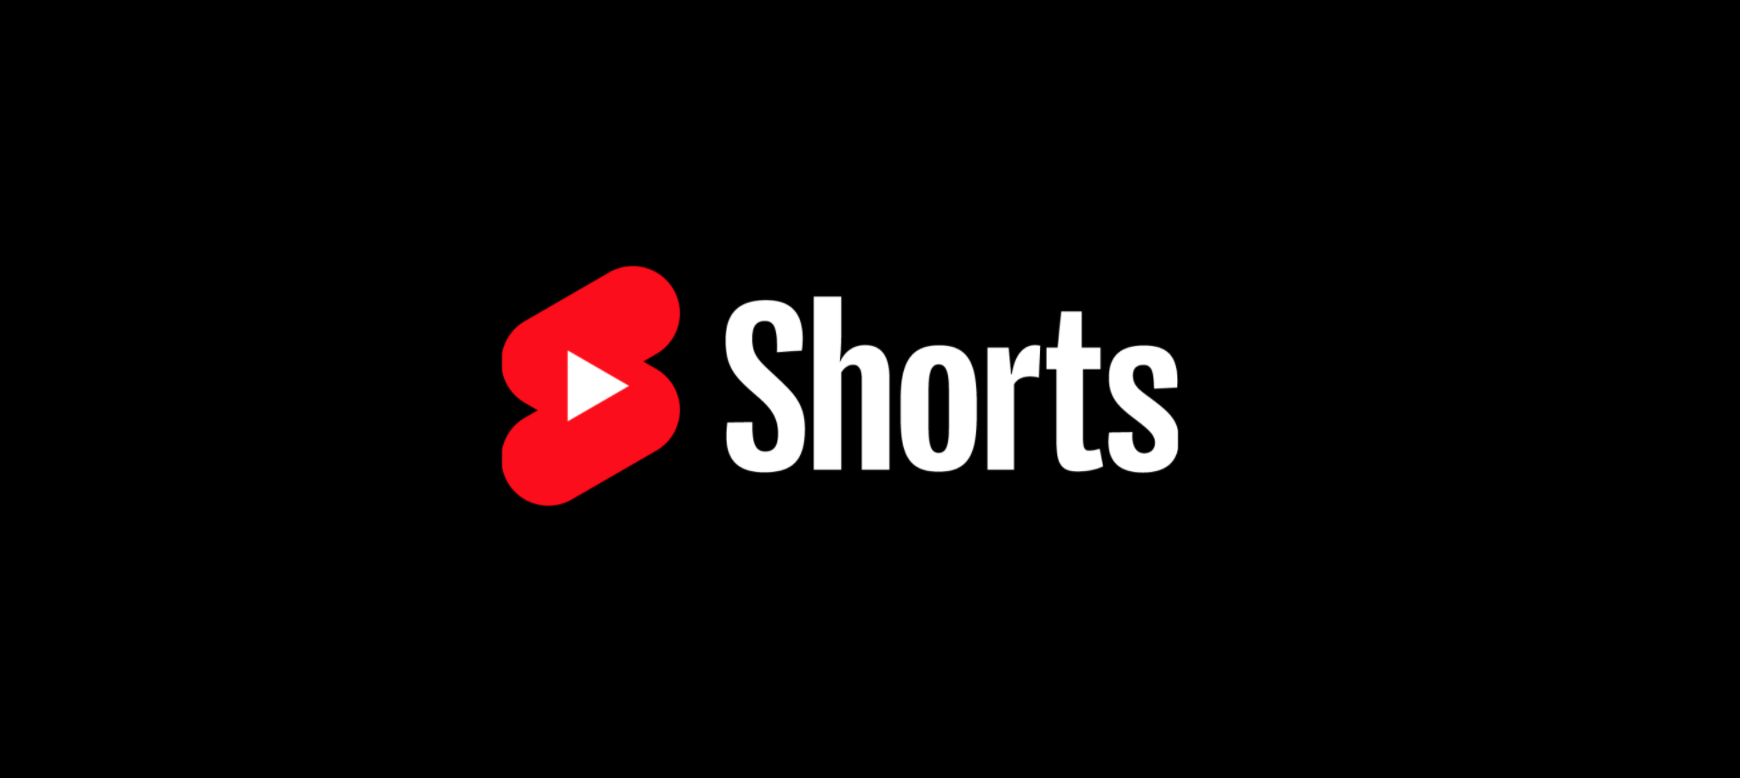 Youtube как сделать short. Ютуб Шортс. Логотип ю тьюб Шортс. Значок shorts youtube. Ютуб Шортс иконка.